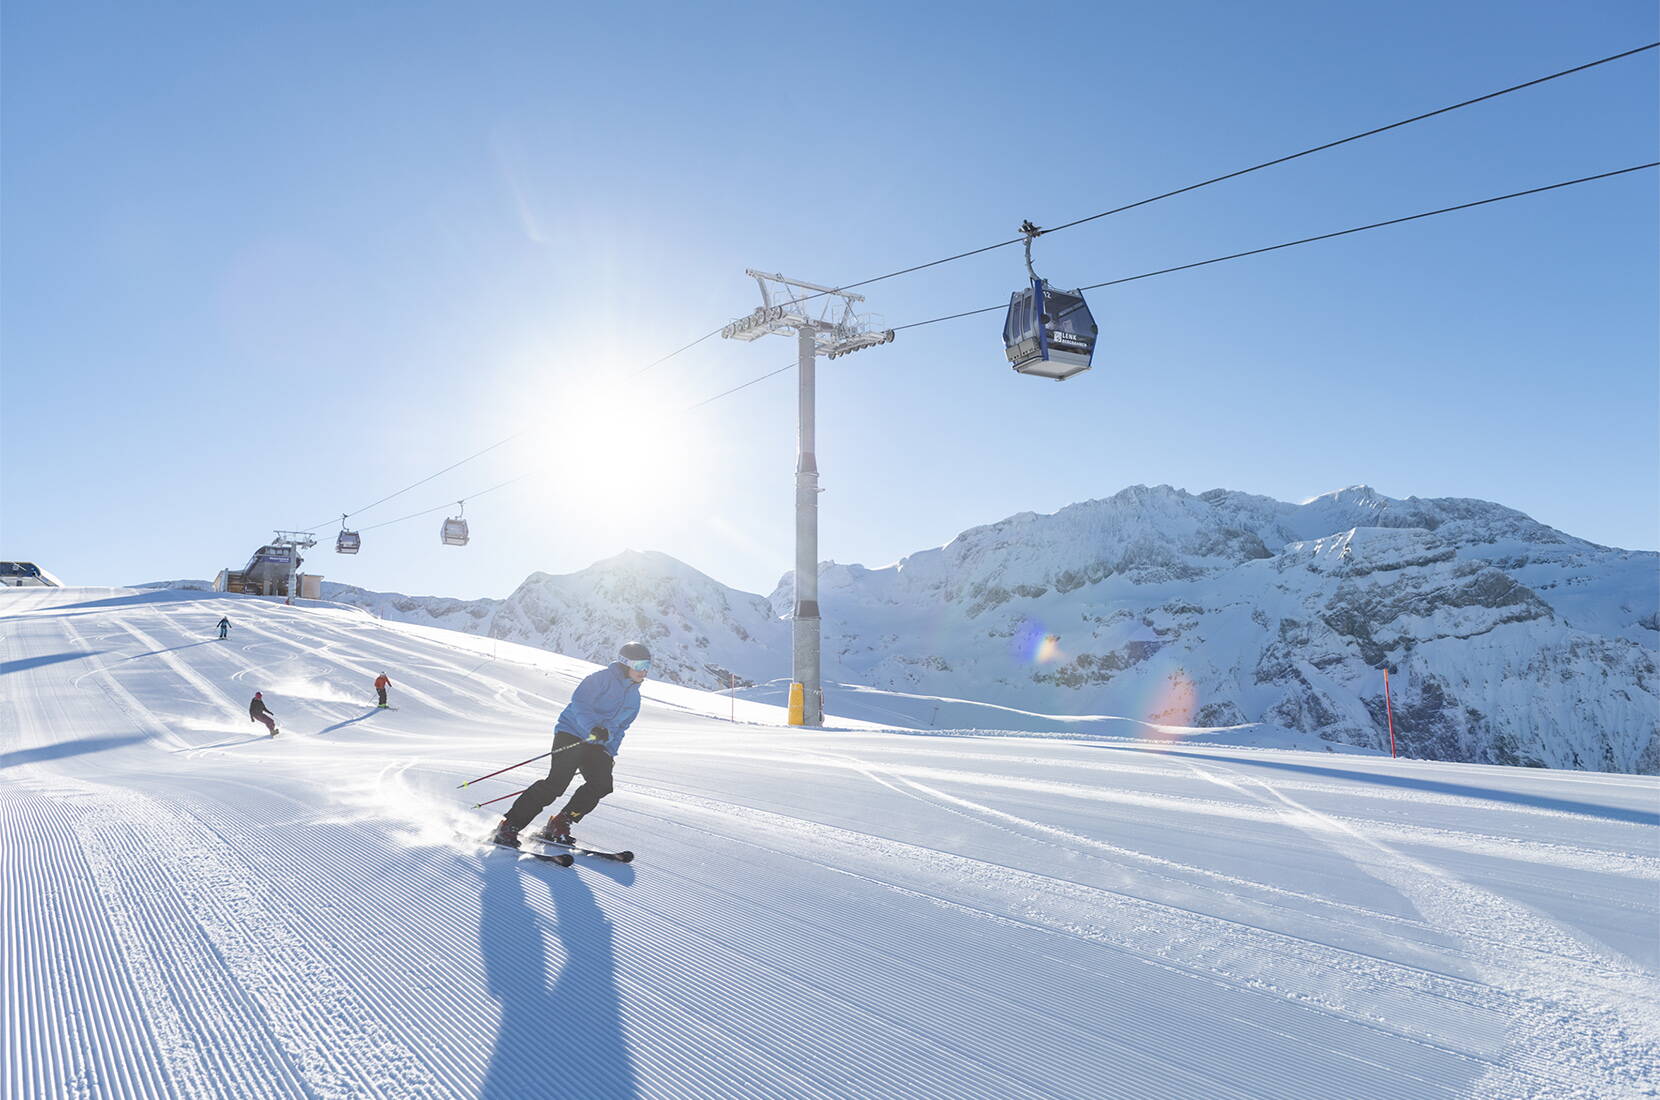 Excursion en famille à Adelboden-Lenk. La région de ski Adelboden-Lenk est l'un des domaines skiables et de snowboard les plus attrayants de Suisse. Les nombreuses auberges de montagne parfaitement entretenues, les chalets de ski traditionnels ou les bars de neige branchés garantissent beaucoup de charme et d'hospitalité.